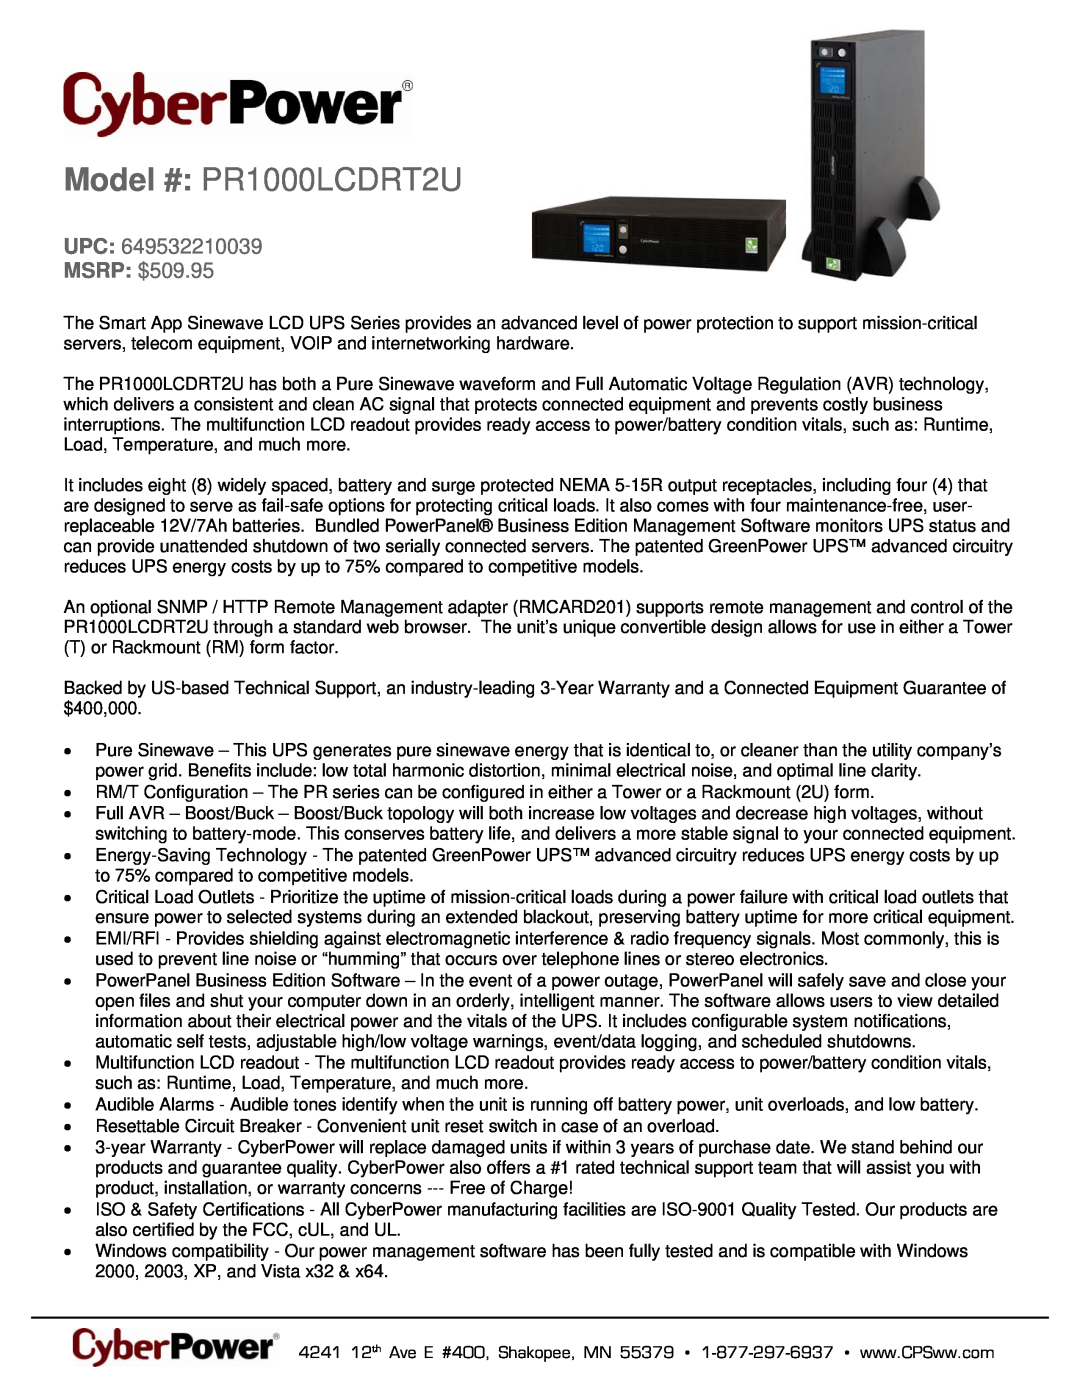 CyberPower Systems 649532210039 warranty Model # PR1000LCDRT2U, UPC MSRP $509.95 